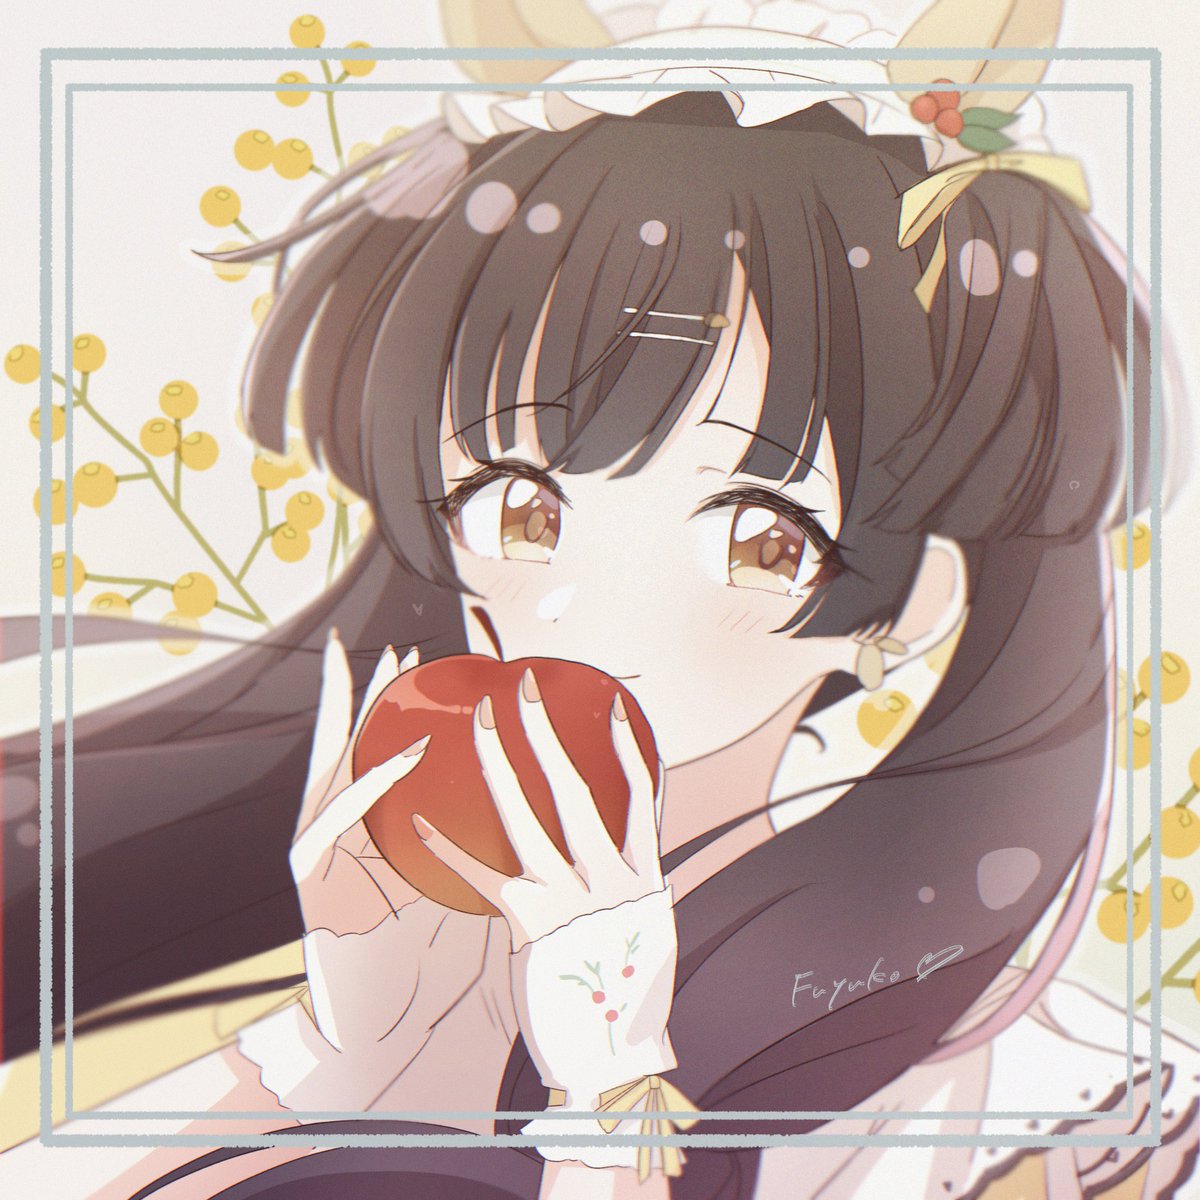 mayuzumi fuyuko 1girl solo fruit food apple holding food holding  illustration images